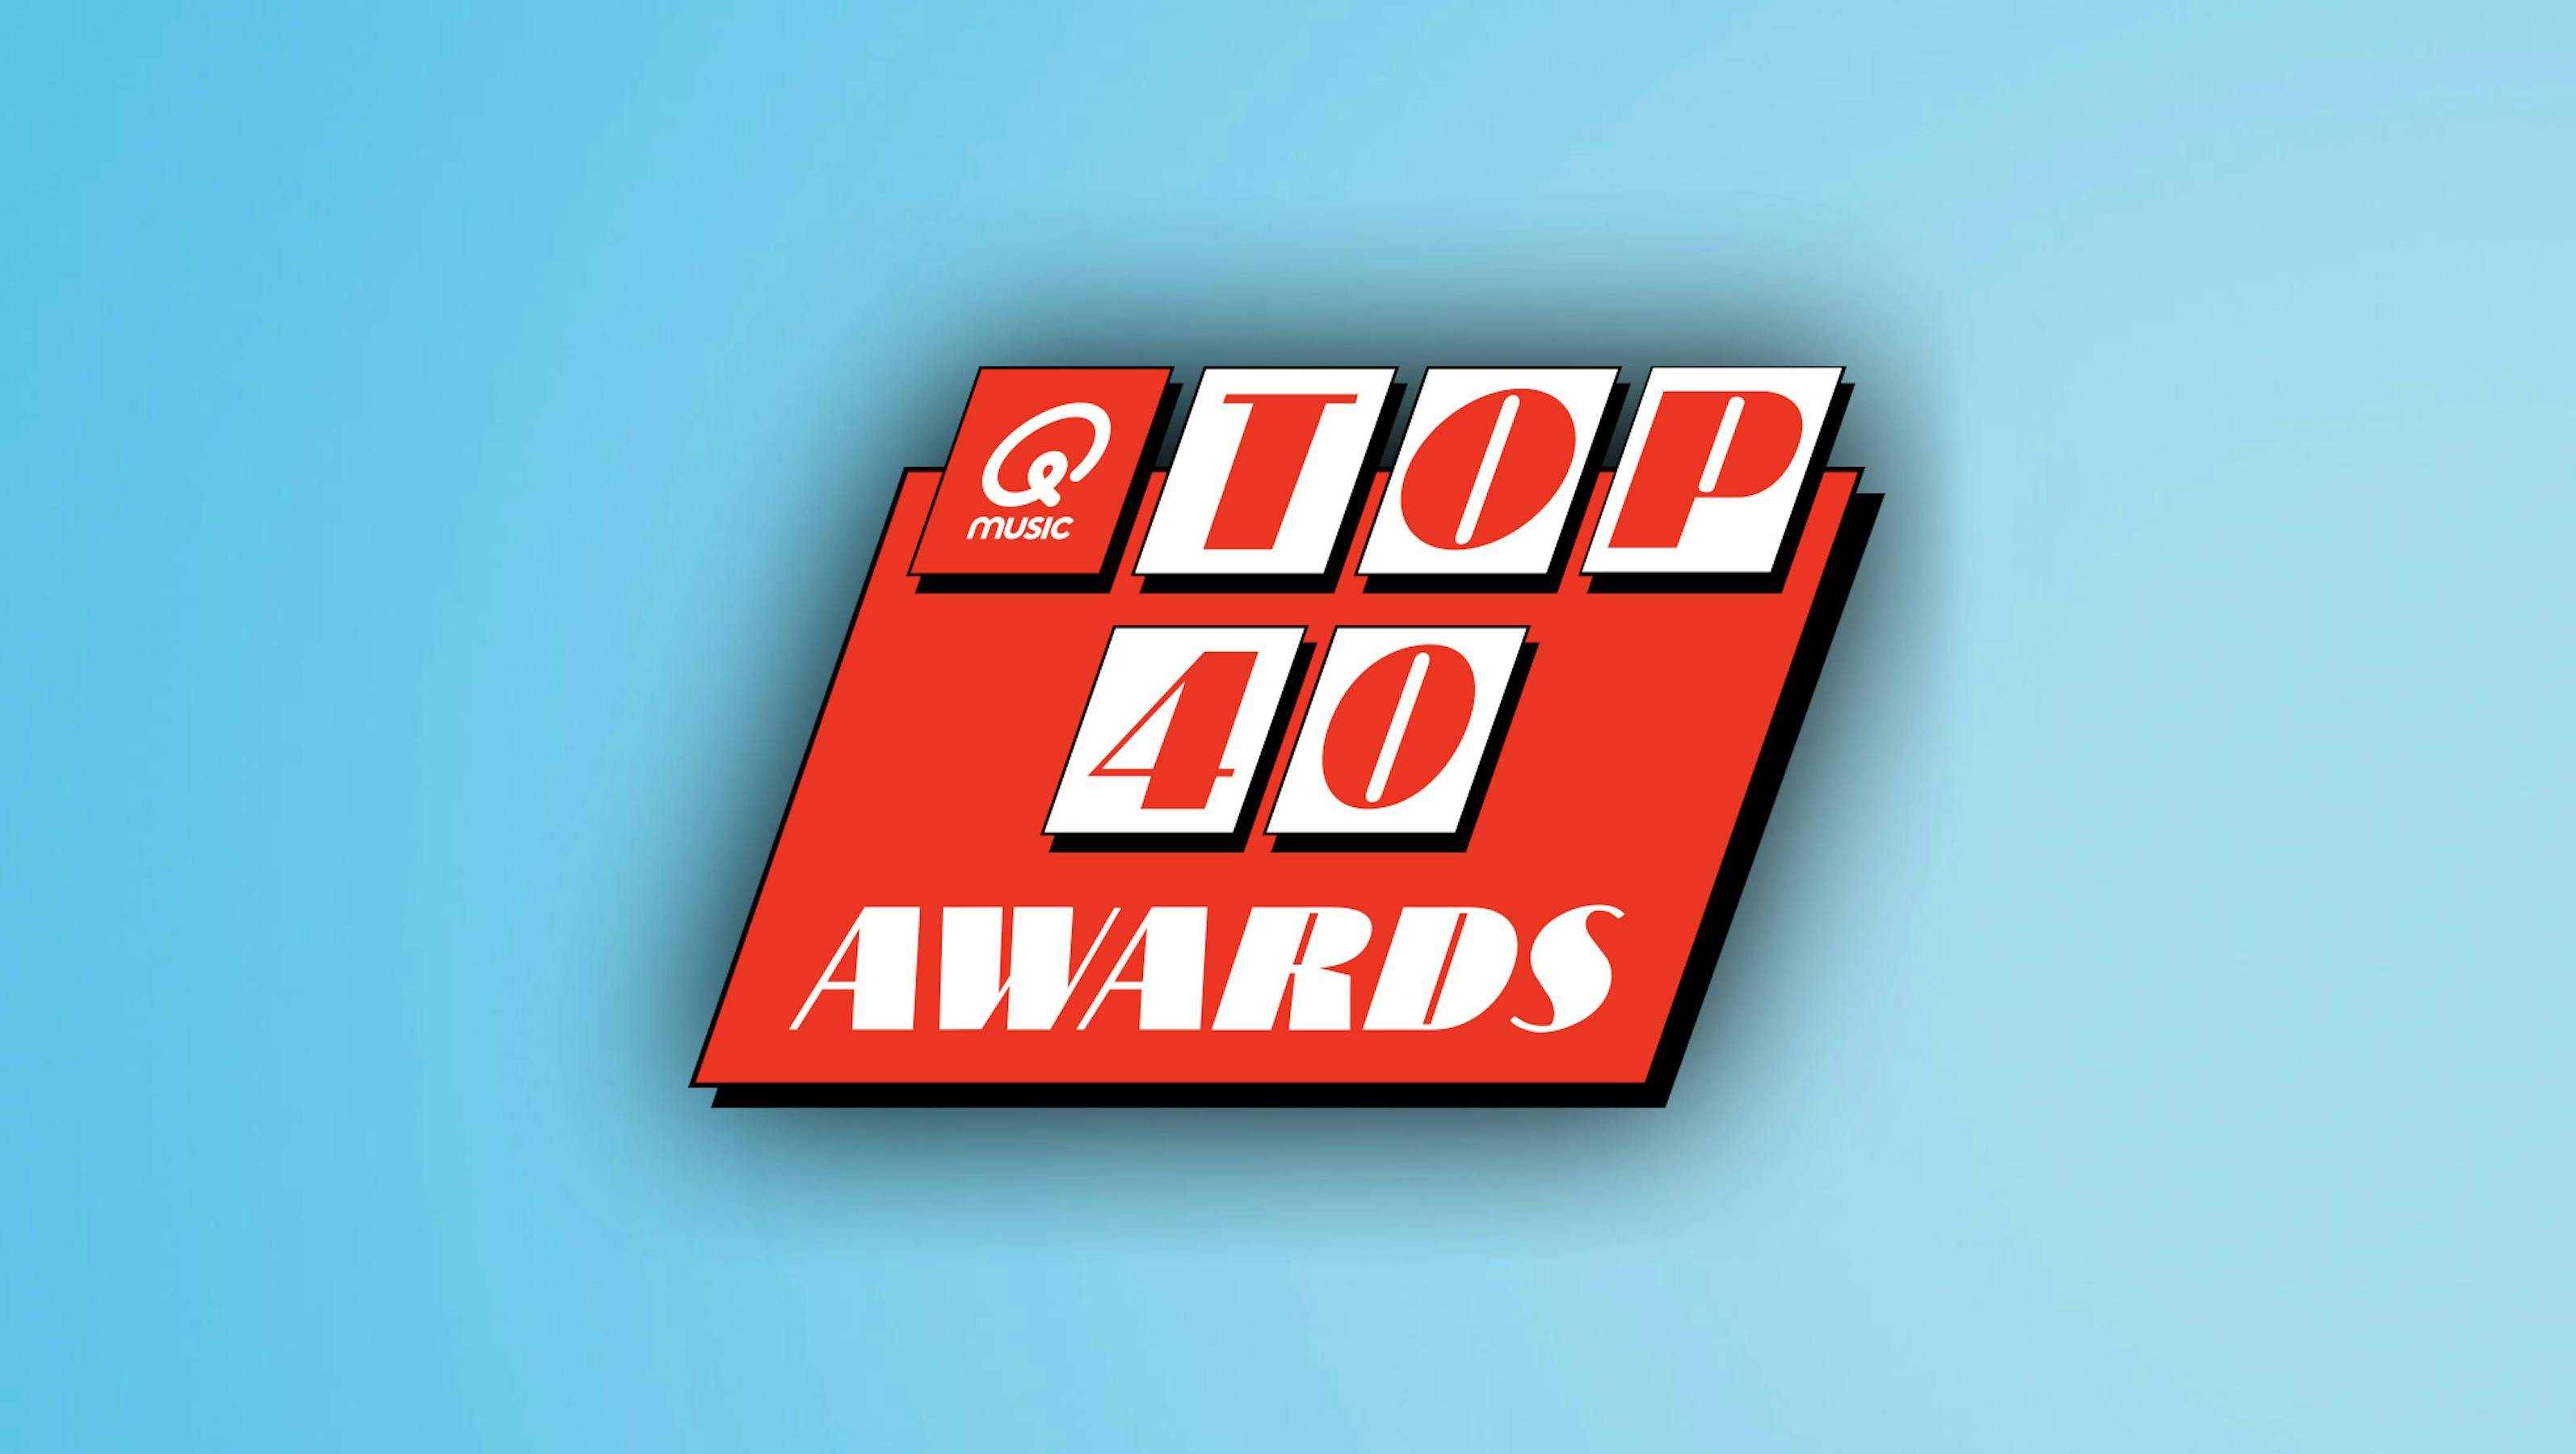 Top 40 Awards